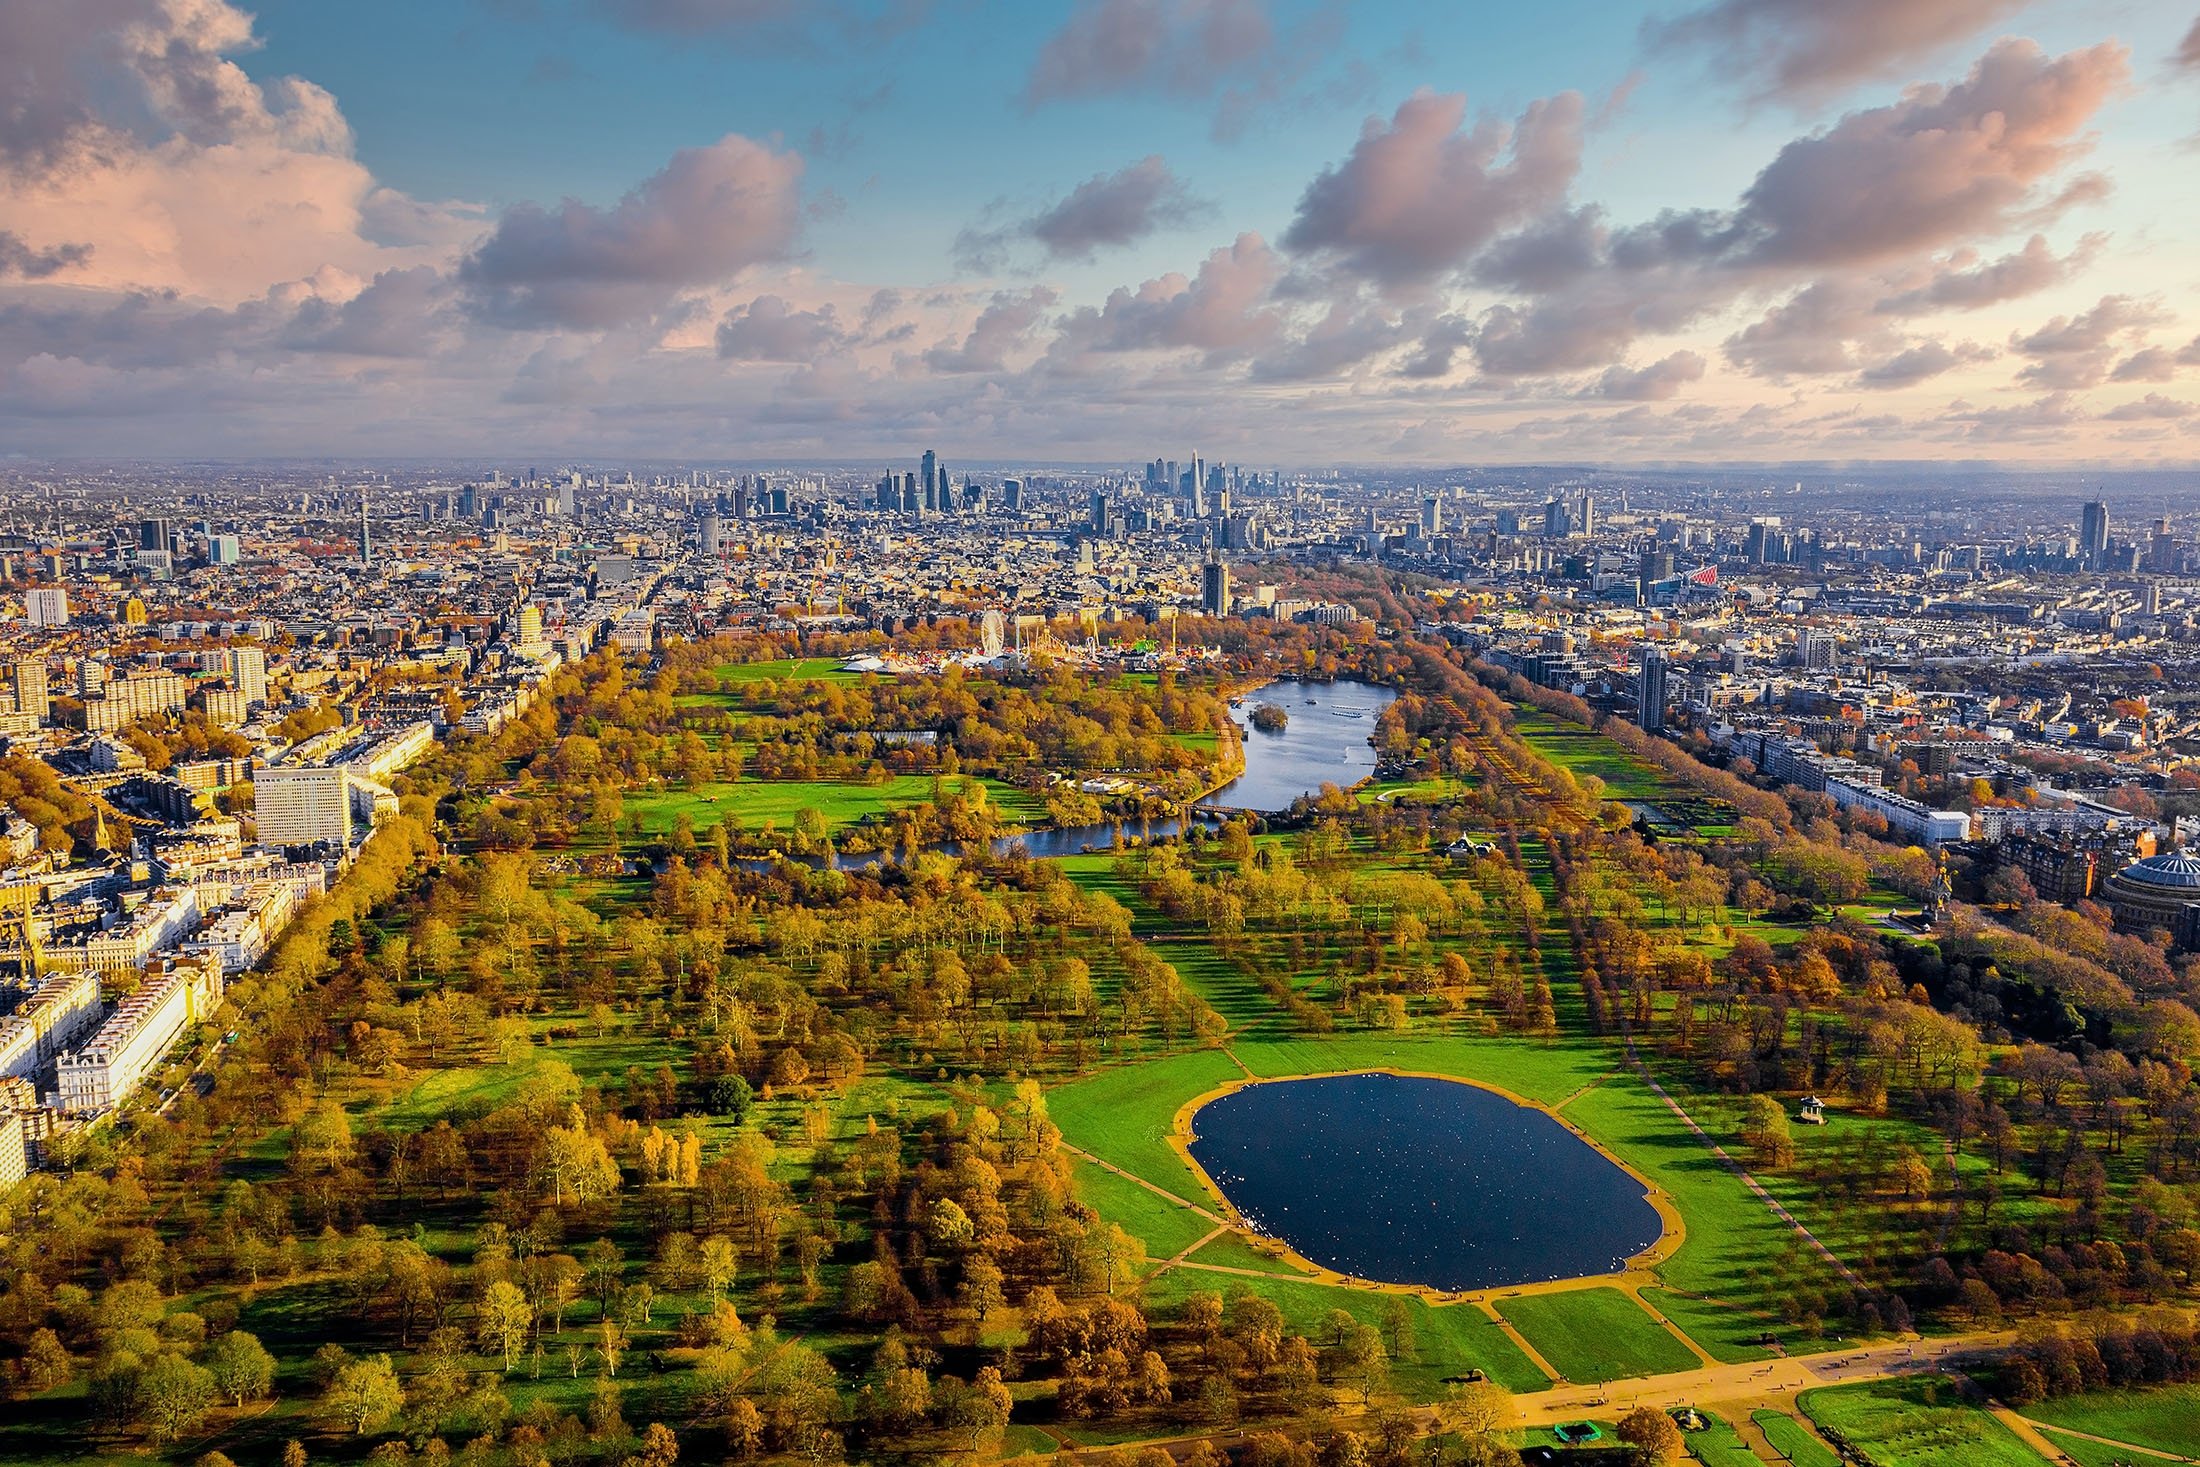 The famous Hyde Park, in London, U.K. (Shutterstock Photo)